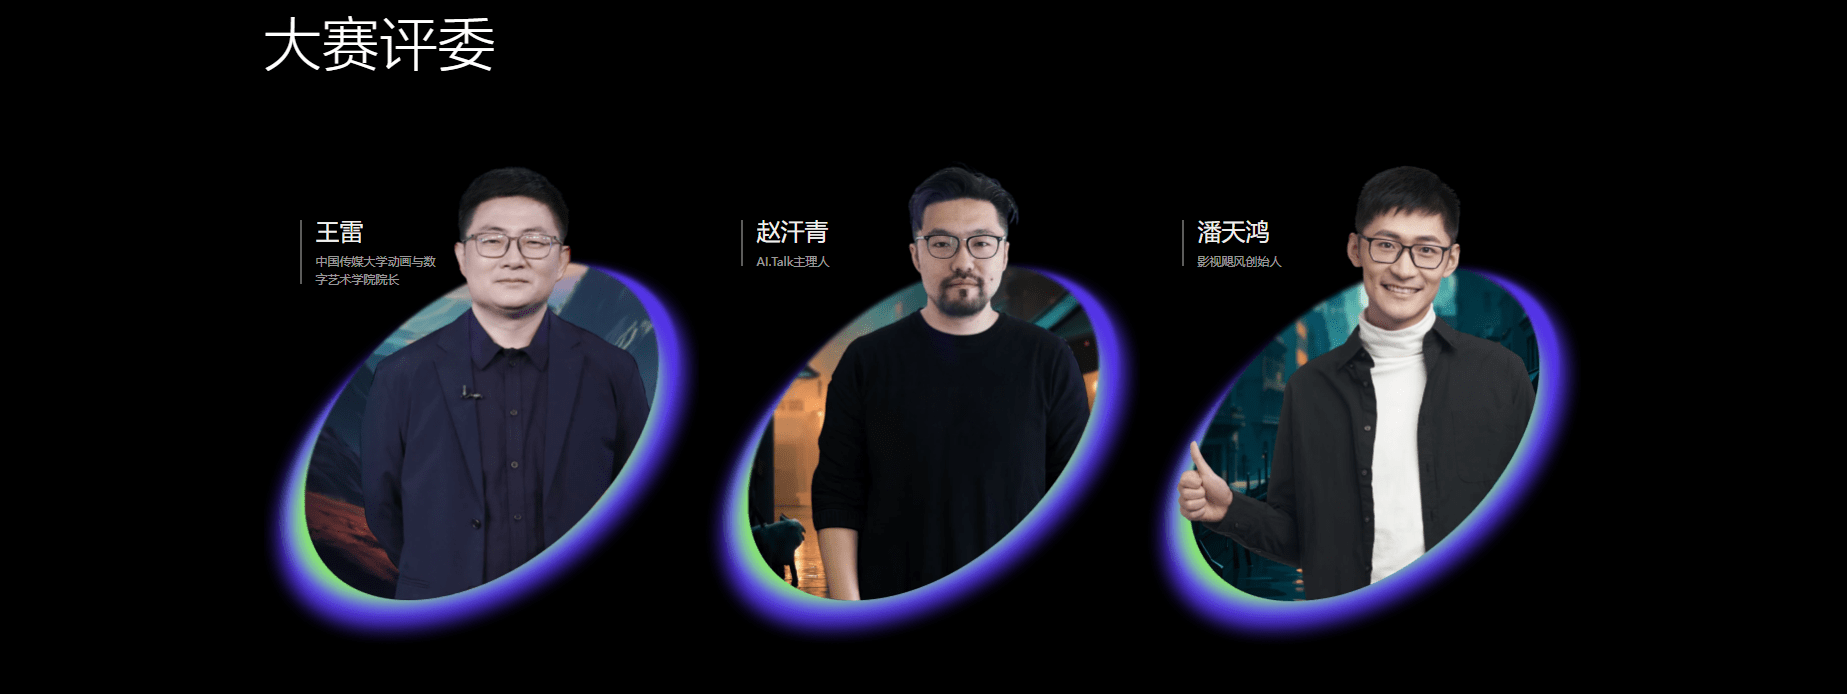 即梦Dreaminax剪映未来影像计划 - AI短片挑战赛